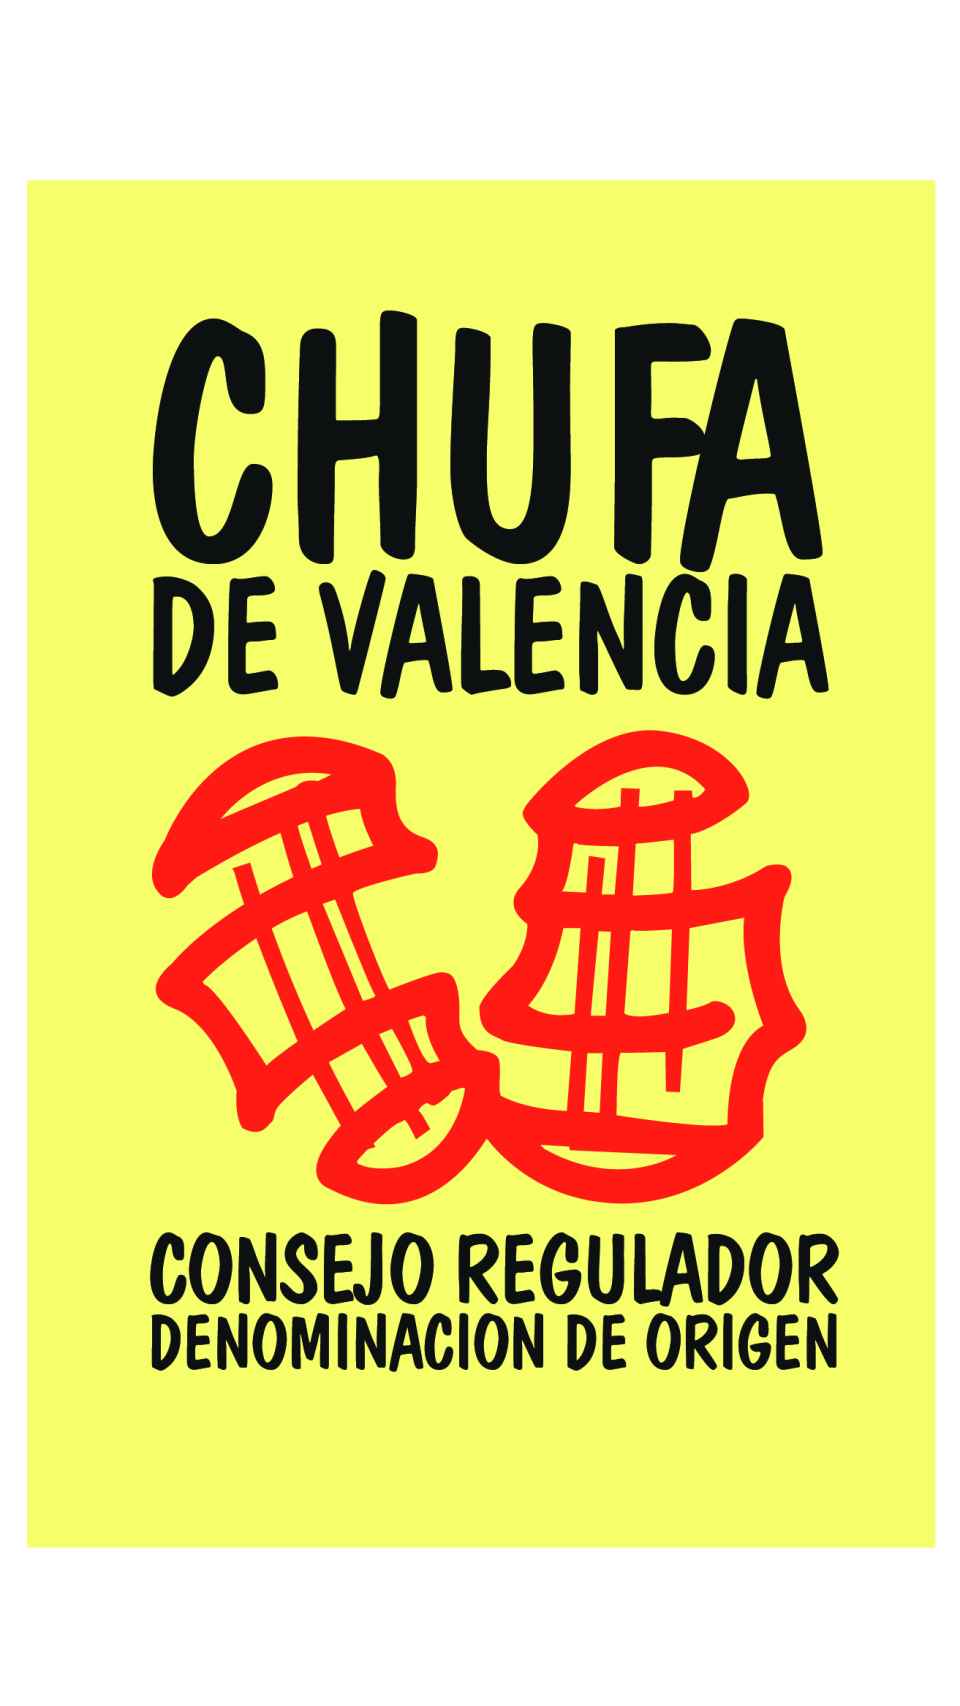 Identificativo de la chufa valenciana con Denominación de Origen